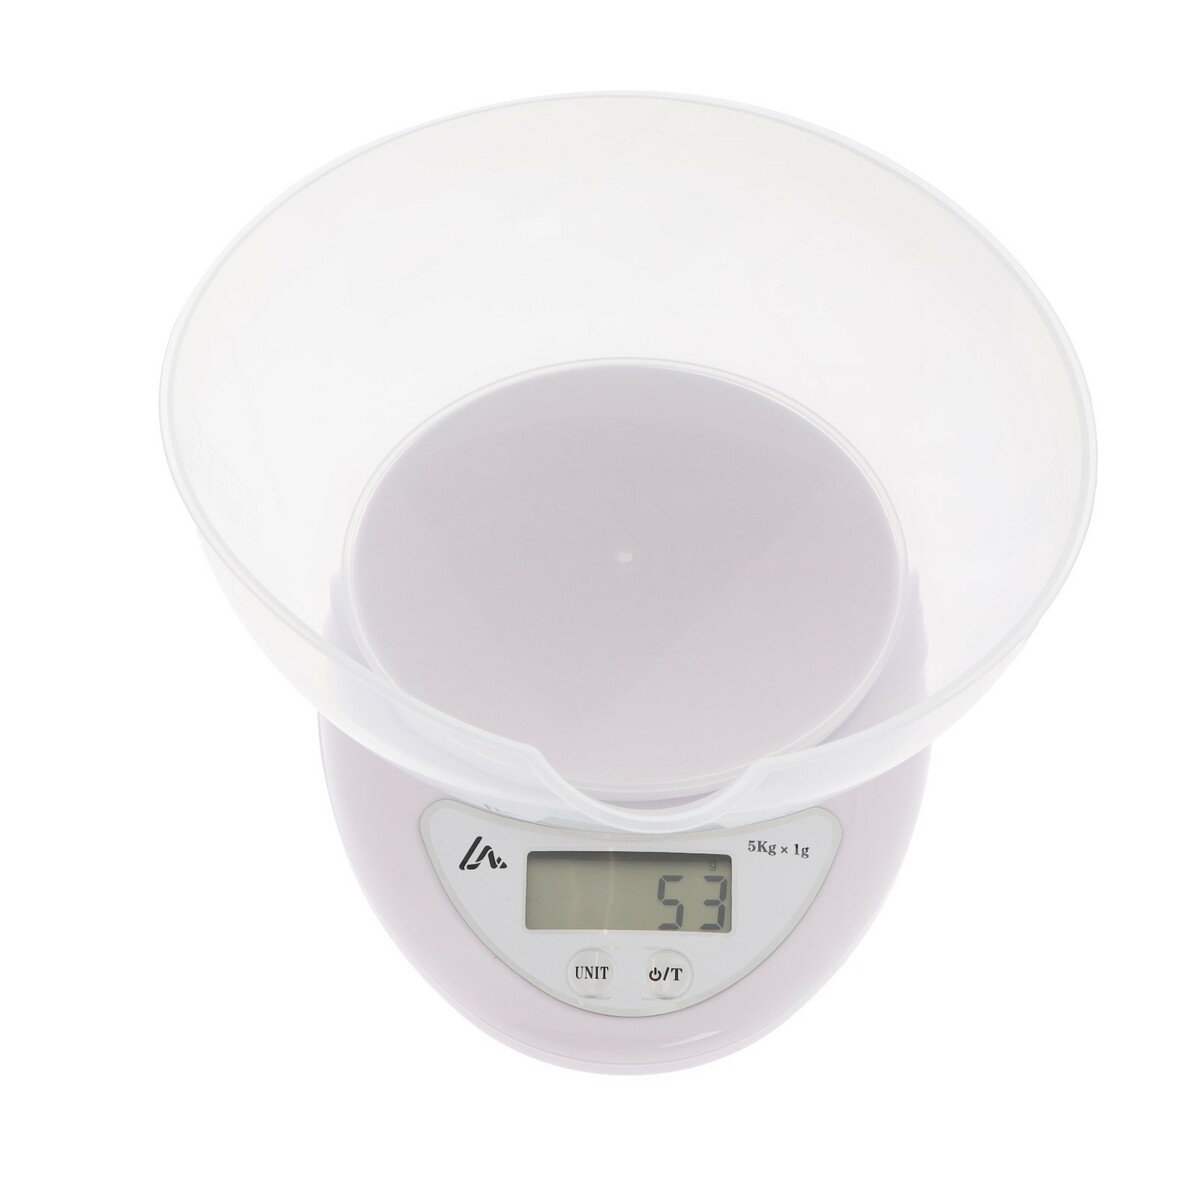 Весы кухонные luazon lvk-706, электронные, с чашей, до 5 кг, белые Luazon Home